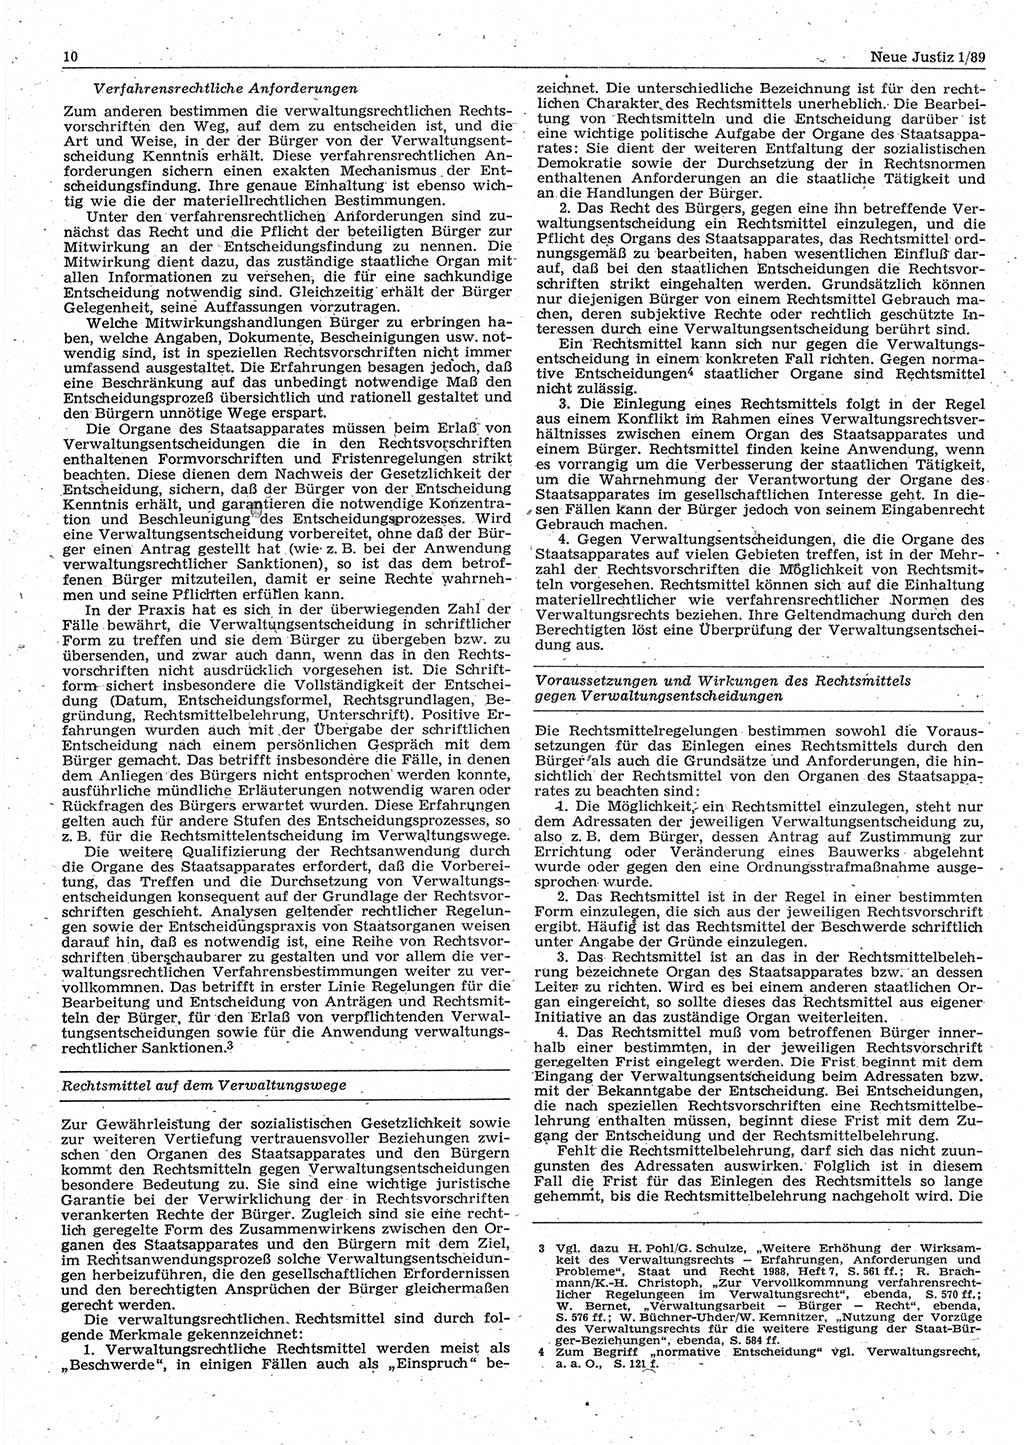 Neue Justiz (NJ), Zeitschrift für sozialistisches Recht und Gesetzlichkeit [Deutsche Demokratische Republik (DDR)], 43. Jahrgang 1989, Seite 10 (NJ DDR 1989, S. 10)